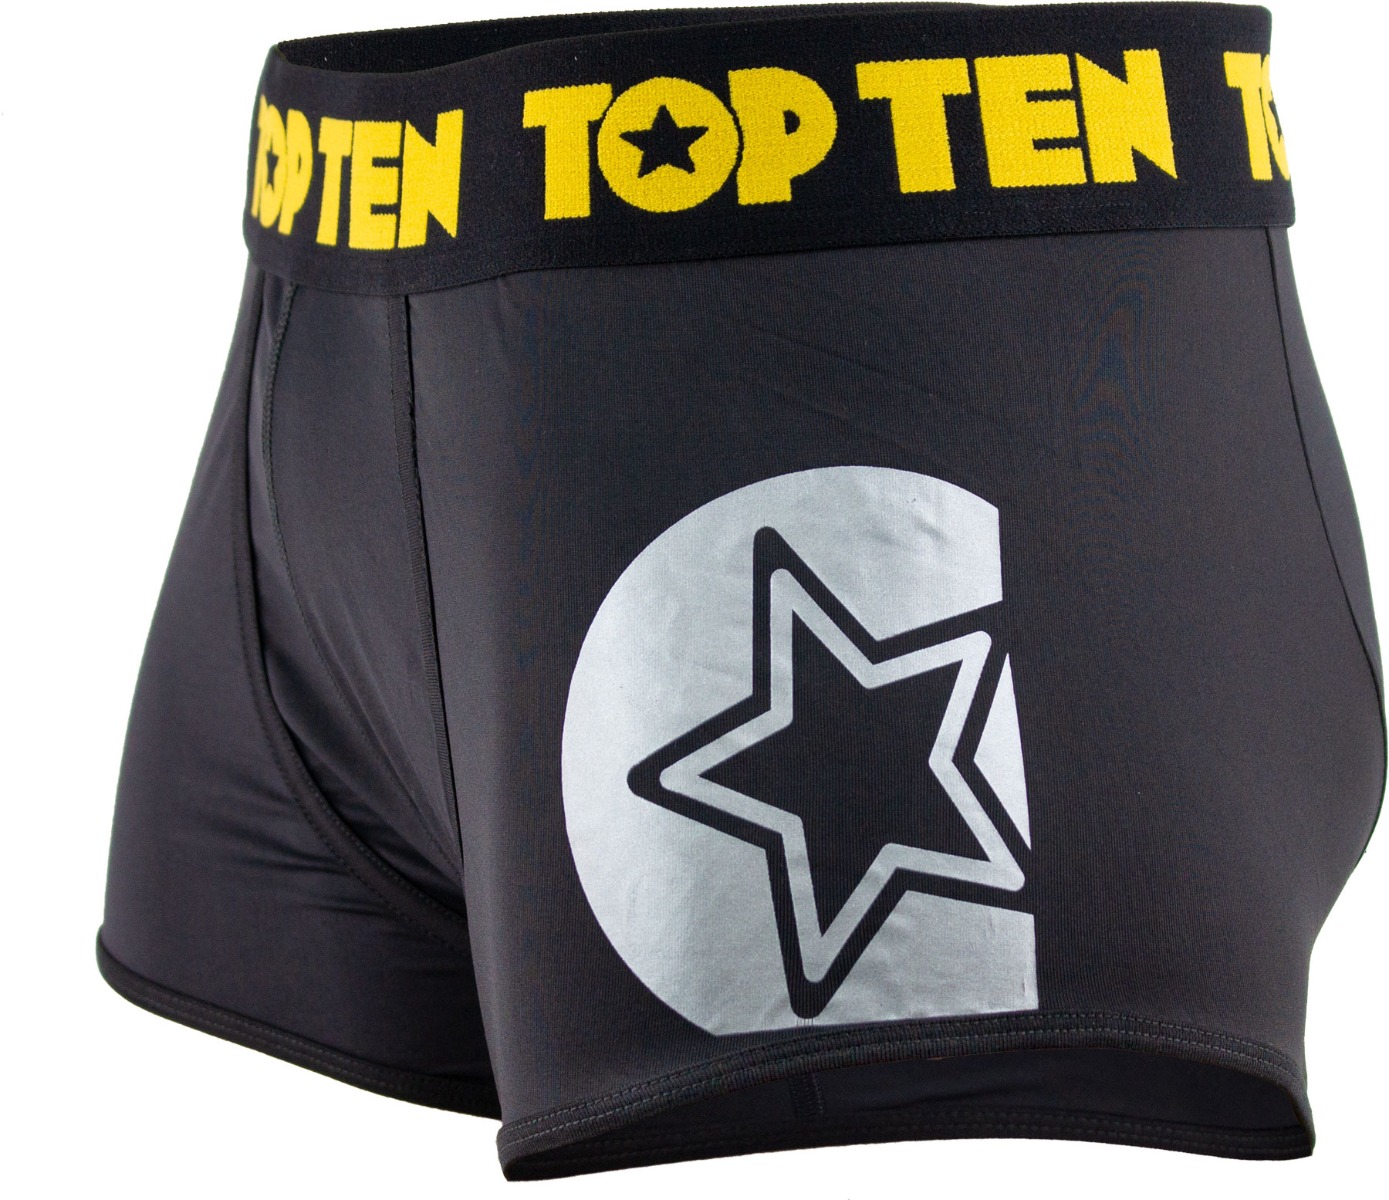 TOP TEN Boxershorts Zwart - goud